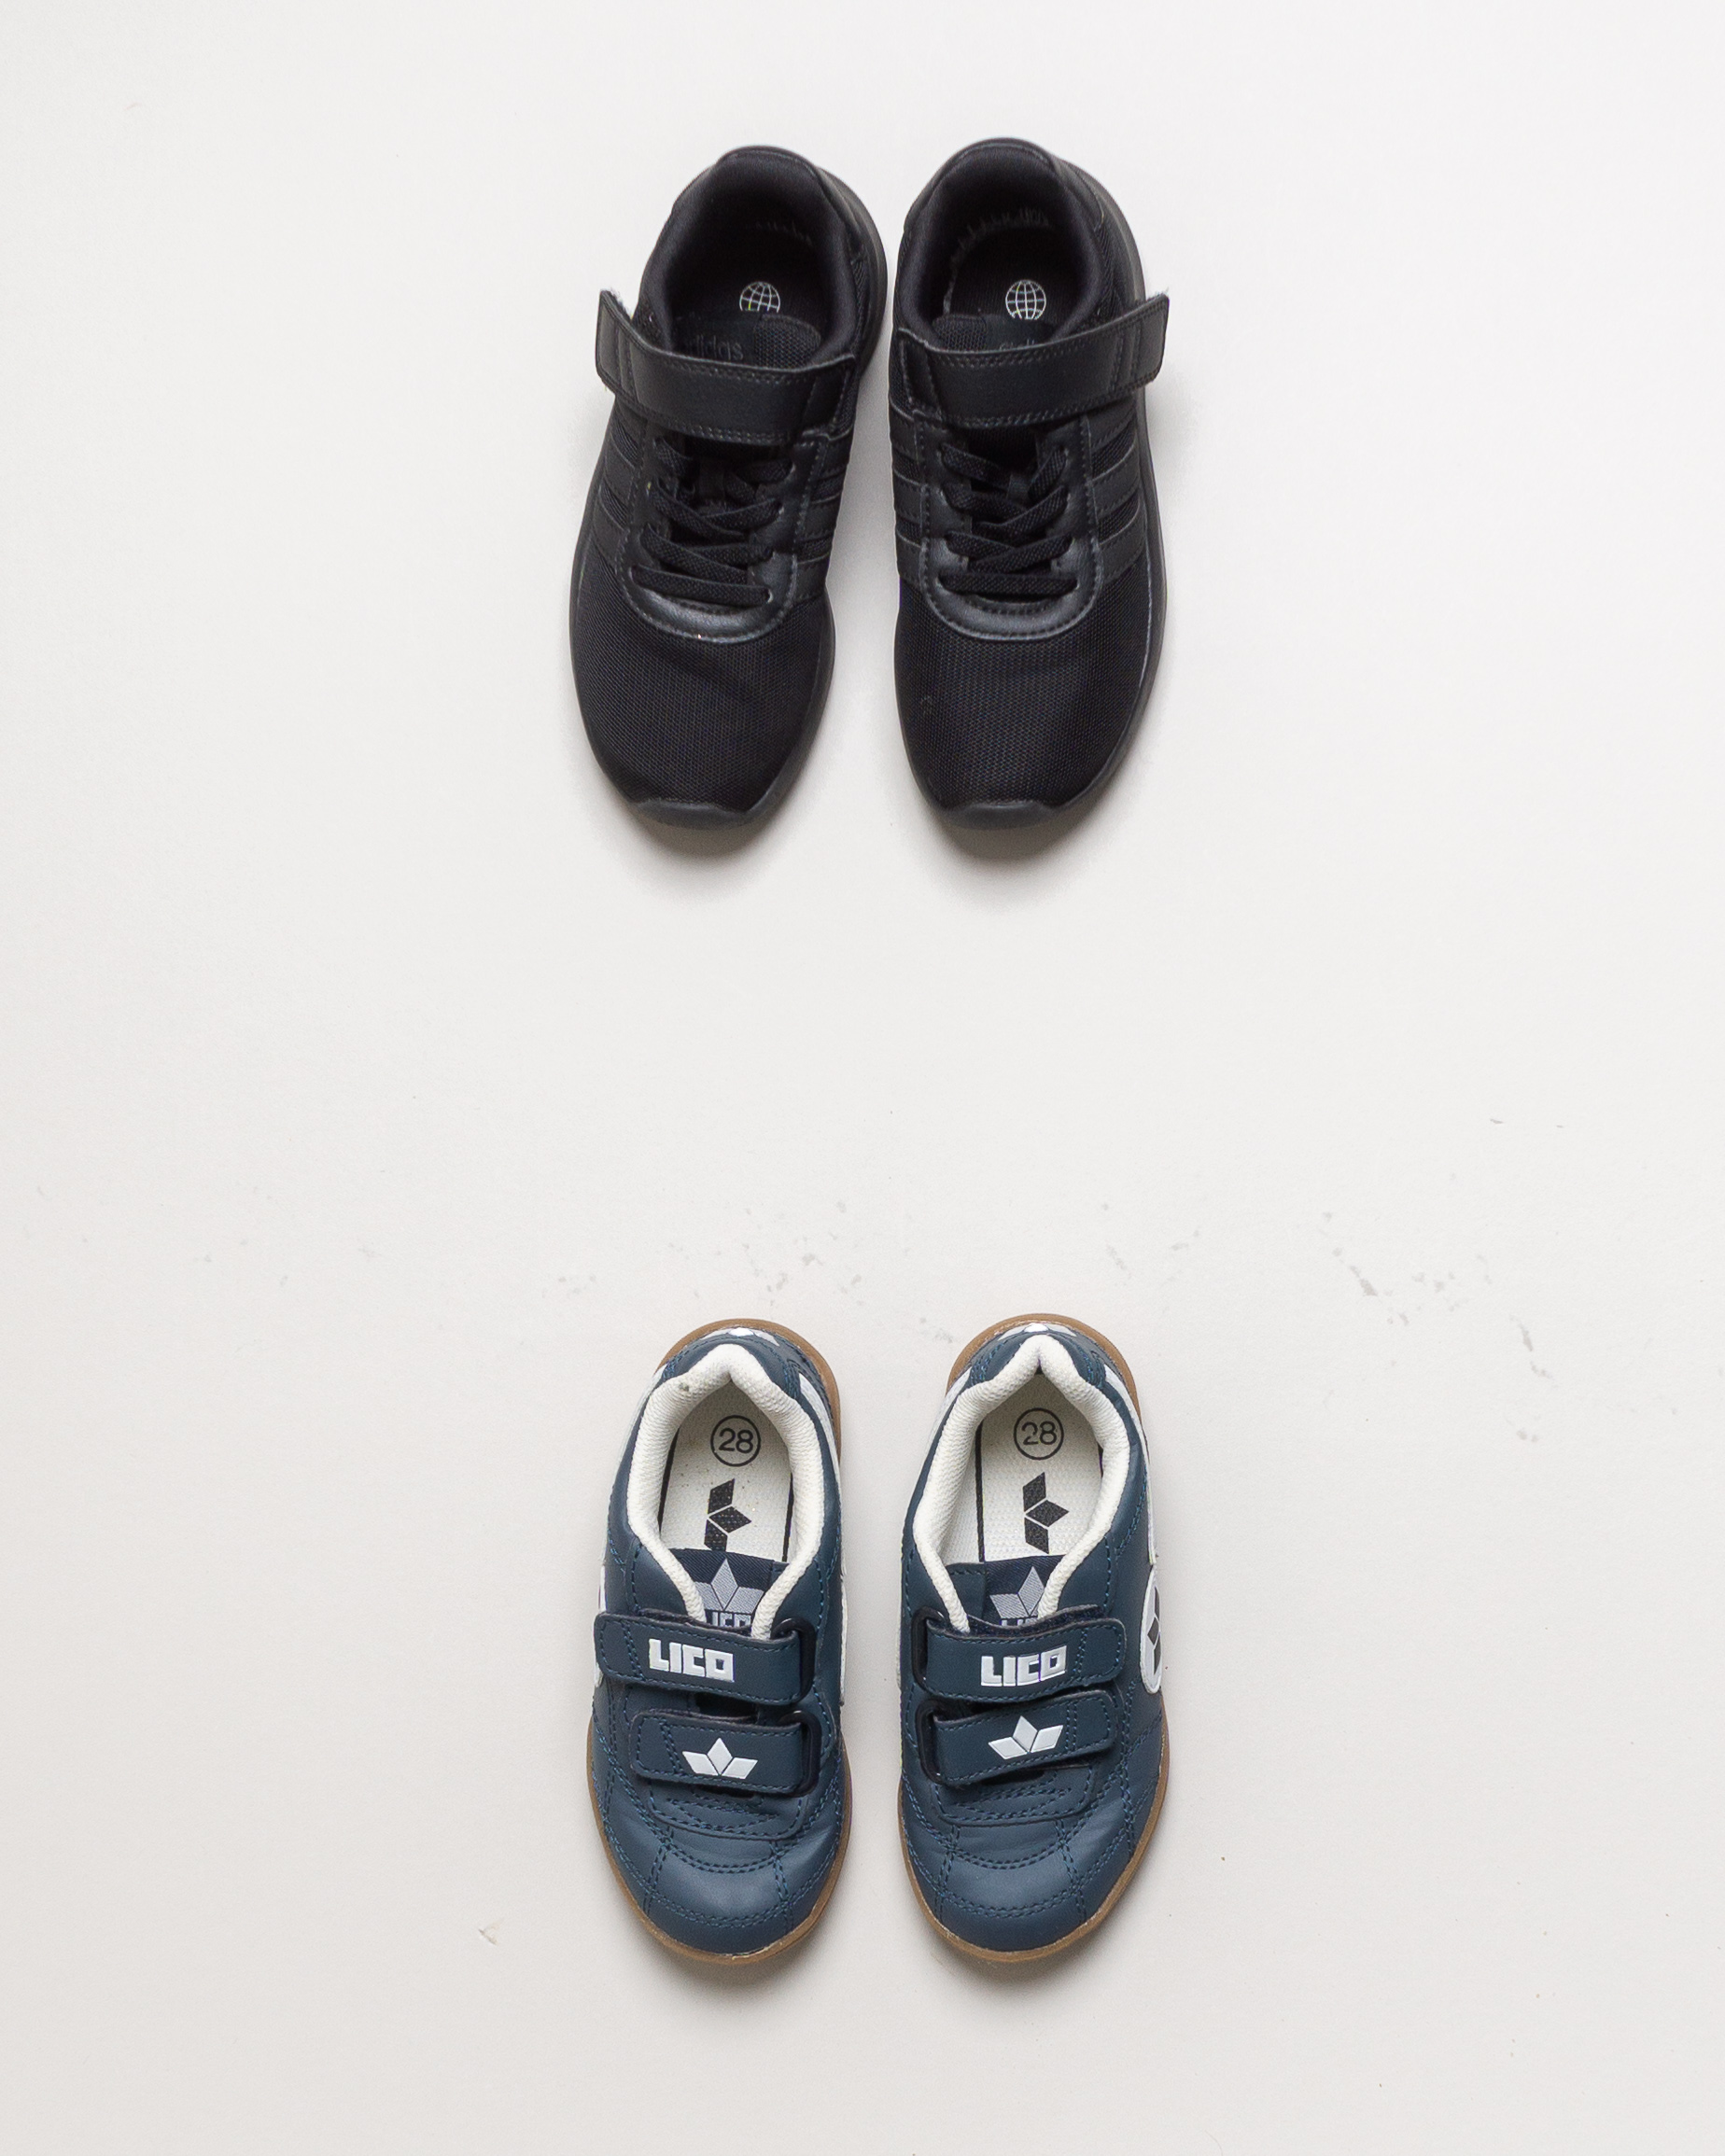 1 Paar Schuhe Gr. 28 - Schwarz Blau Lico Sport Turnschuhe